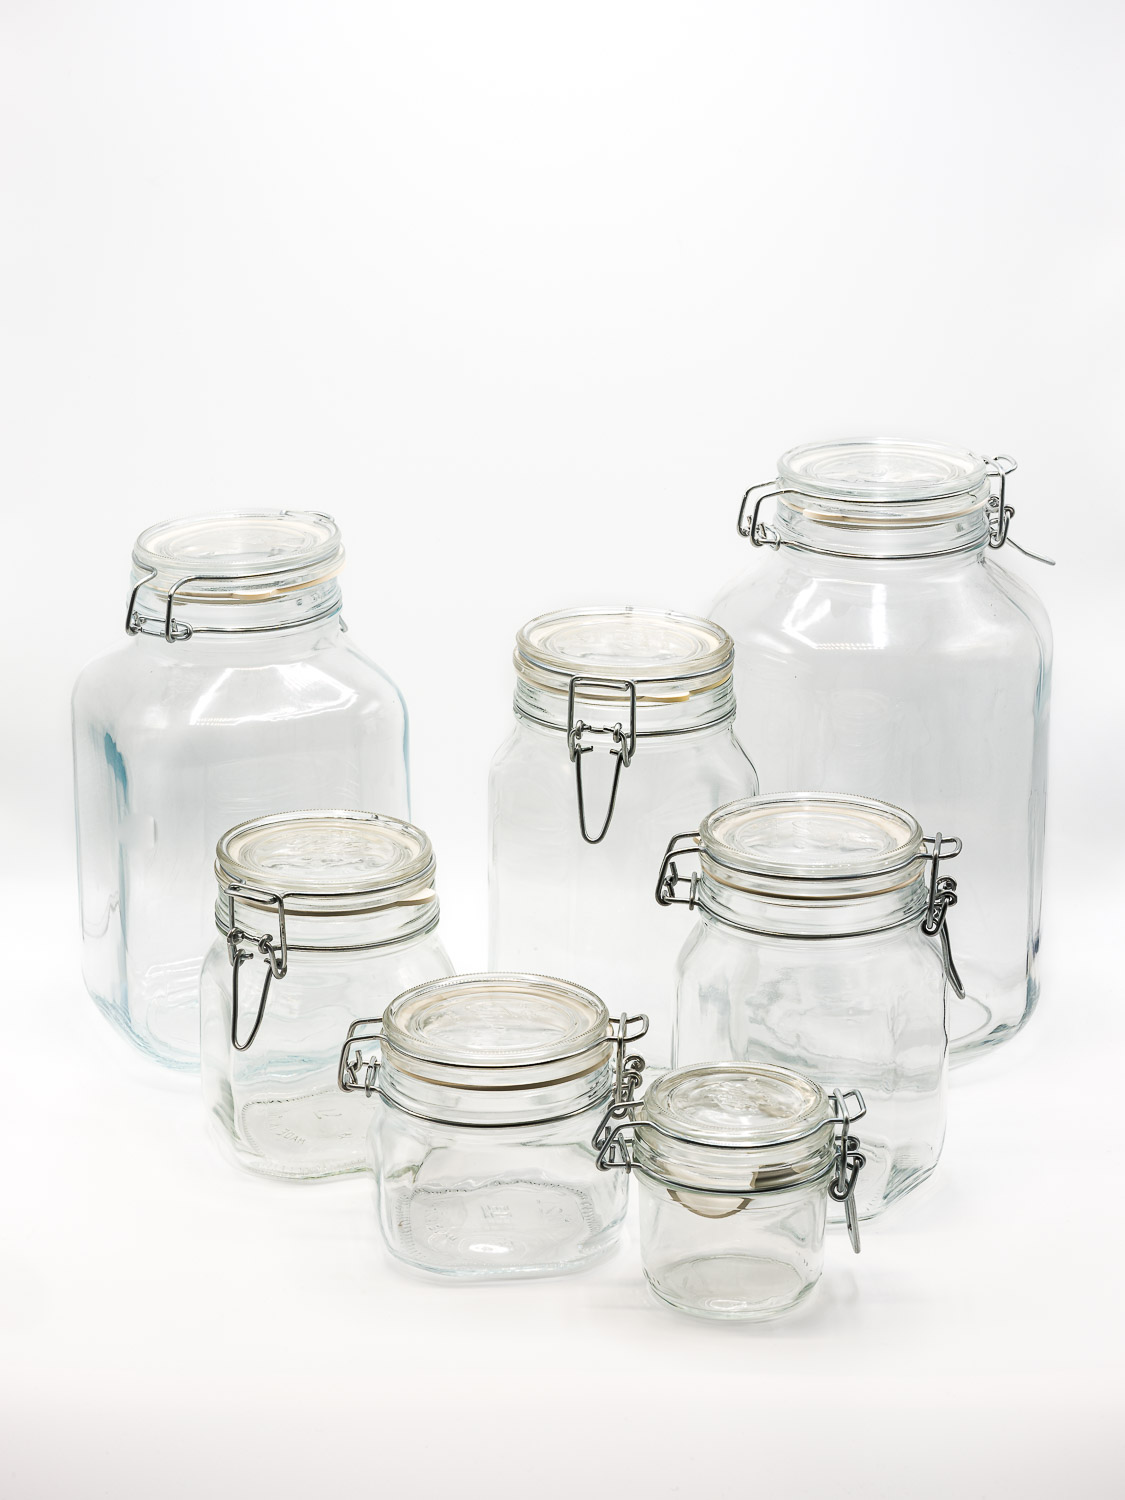 storage jars